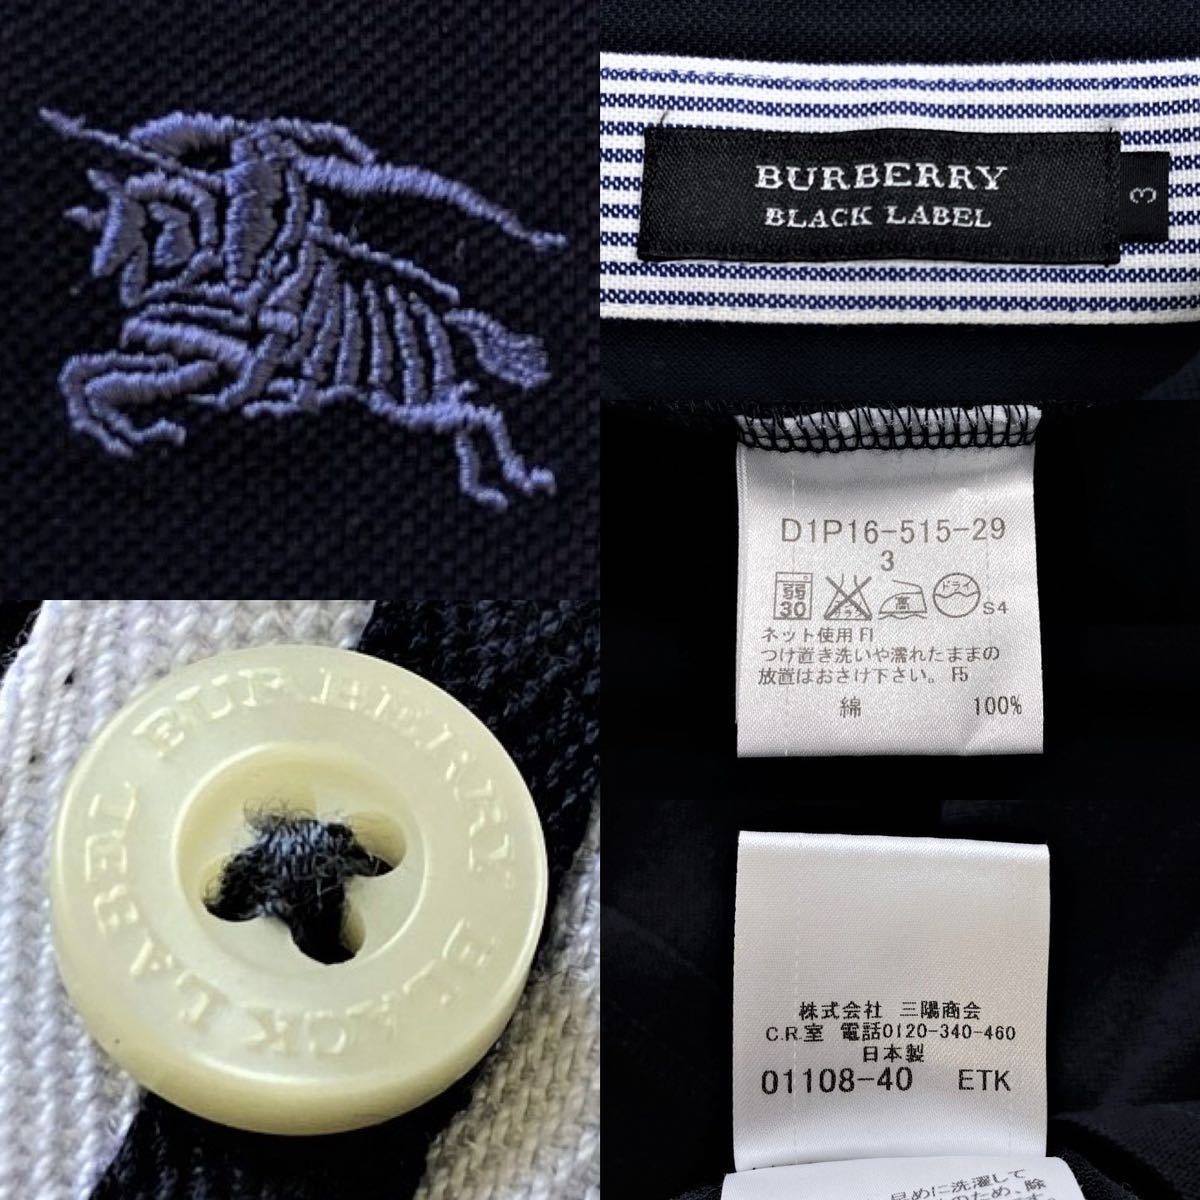  редкий L! превосходный товар сделано в Японии Burberry Black Label шланг вышивка гребень шлема полоса окантовка олень. . рубашка-поло 3/L темно-синий BURBERRY BLACK LABEL